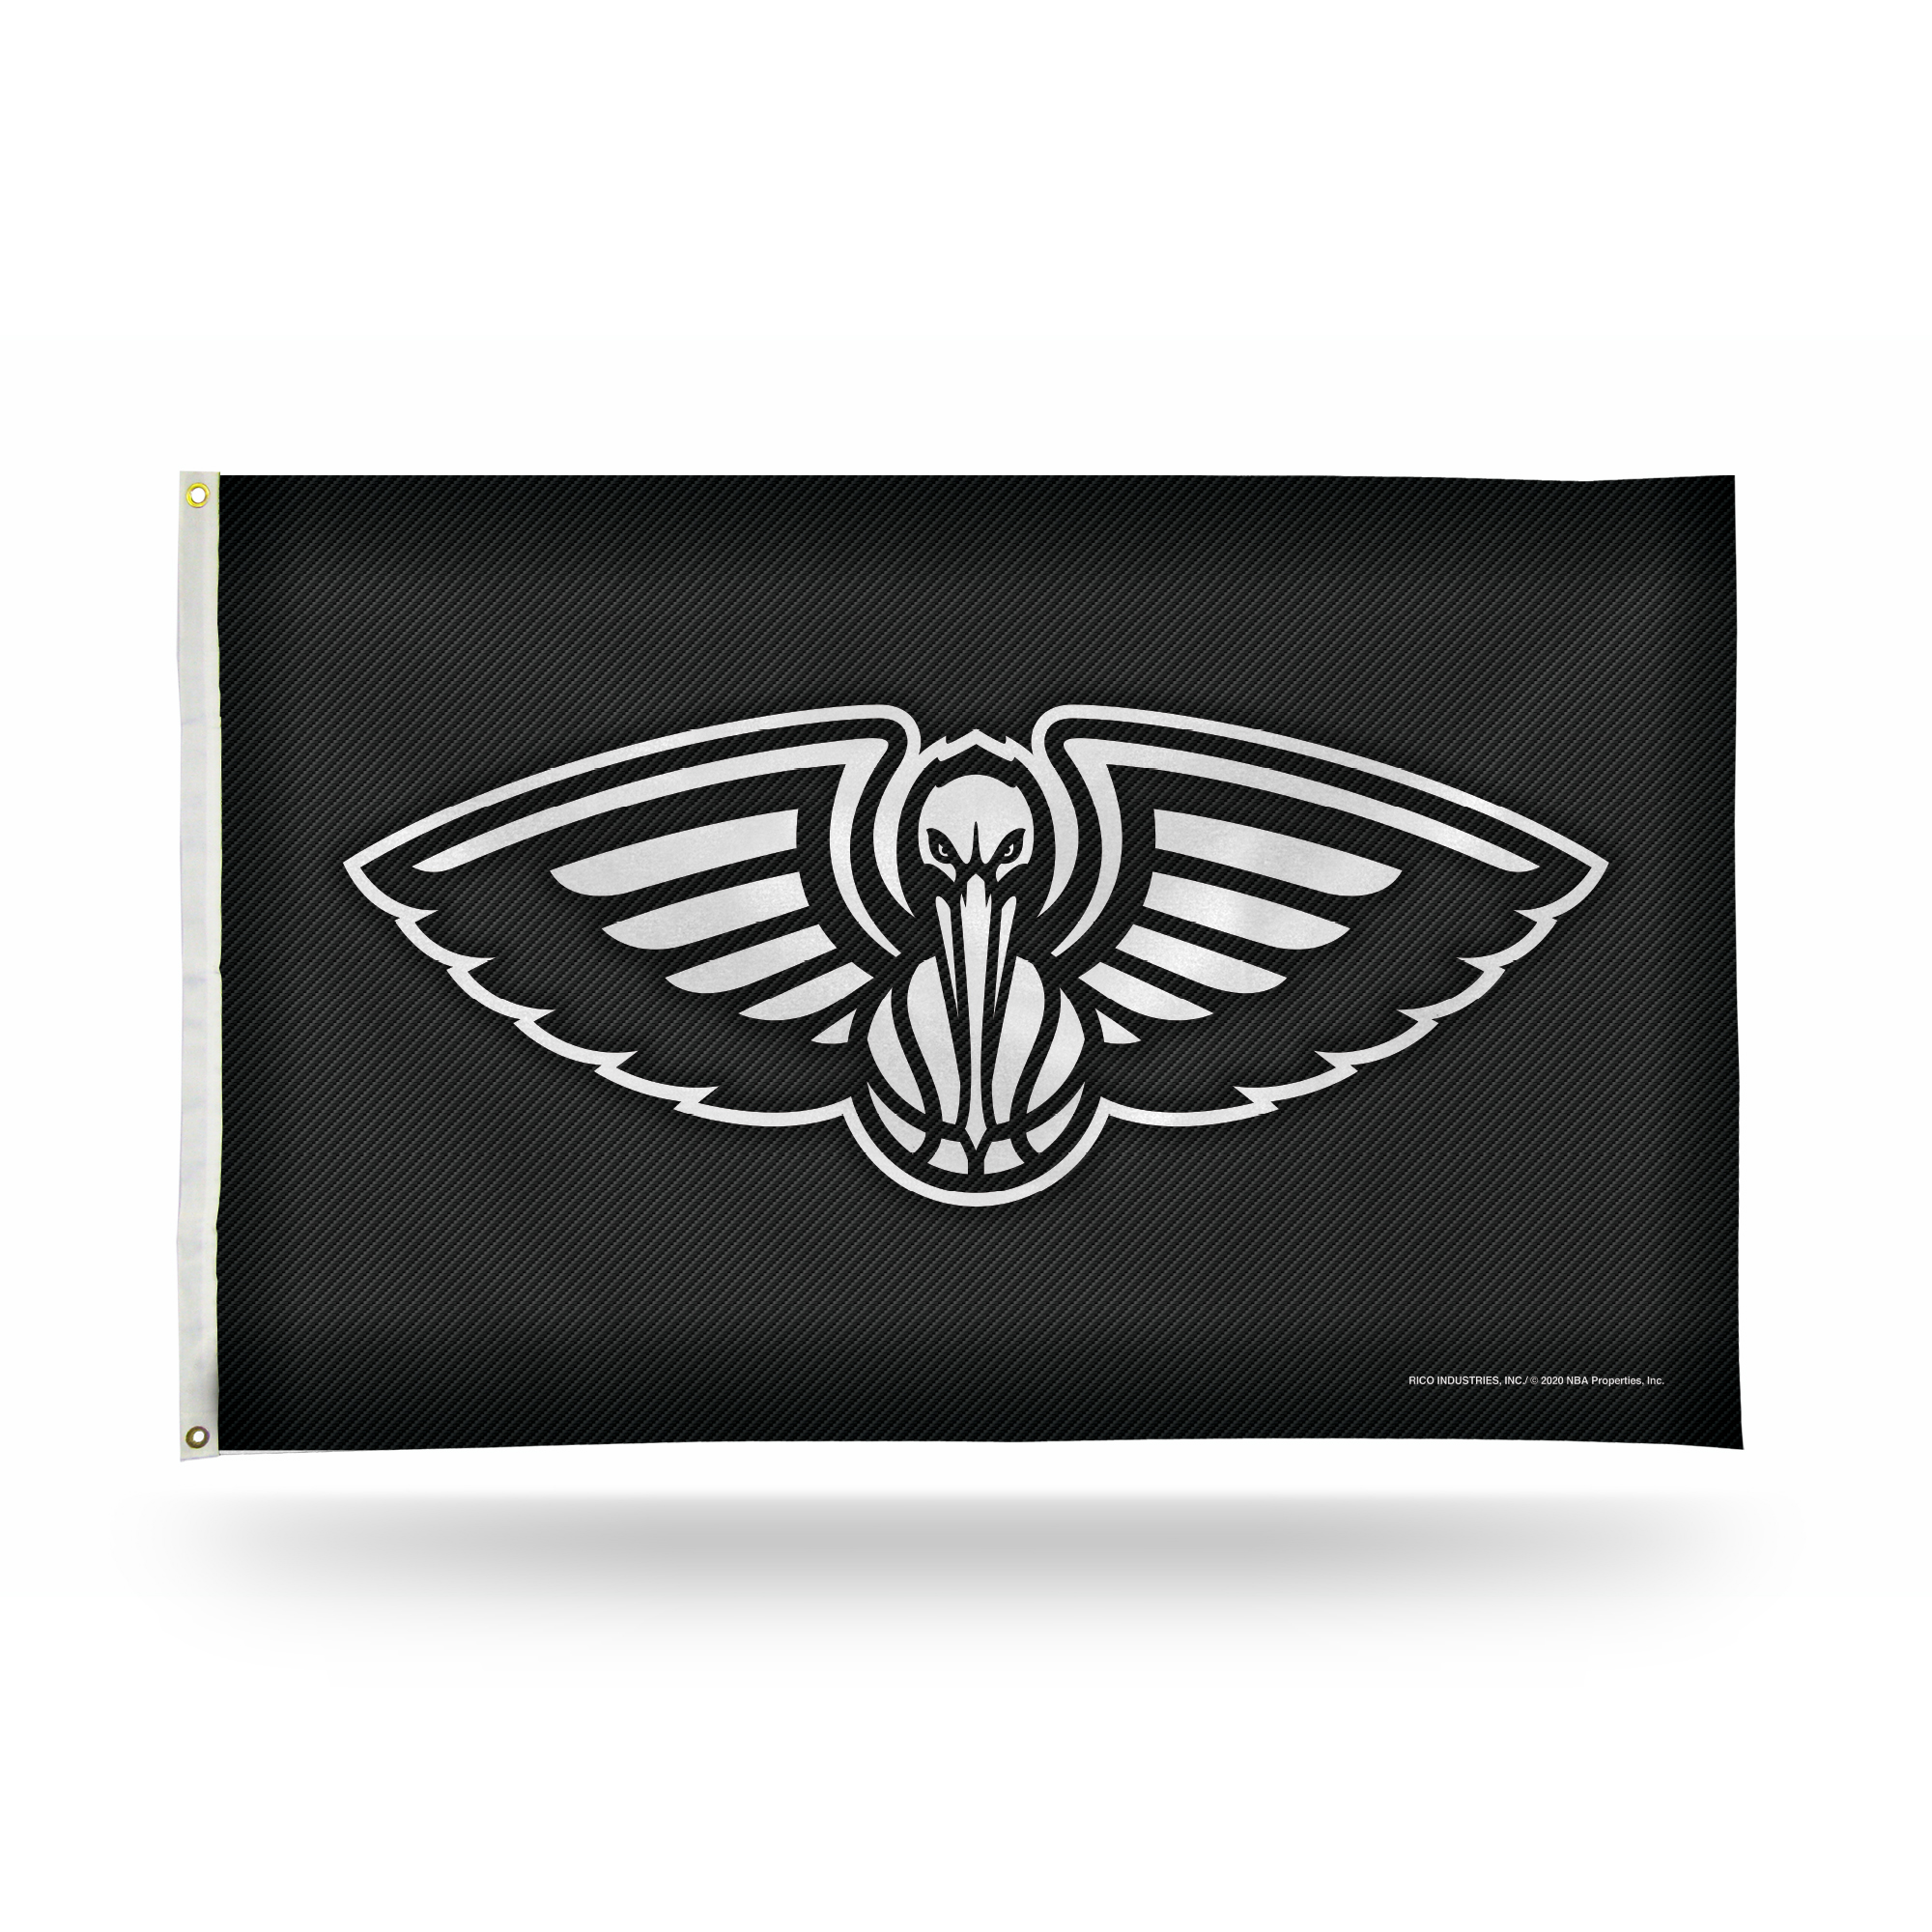 Rico NBA Rico Industries New Orleans Pelicans Carbon Fiber 3' x 5' Banner Flag